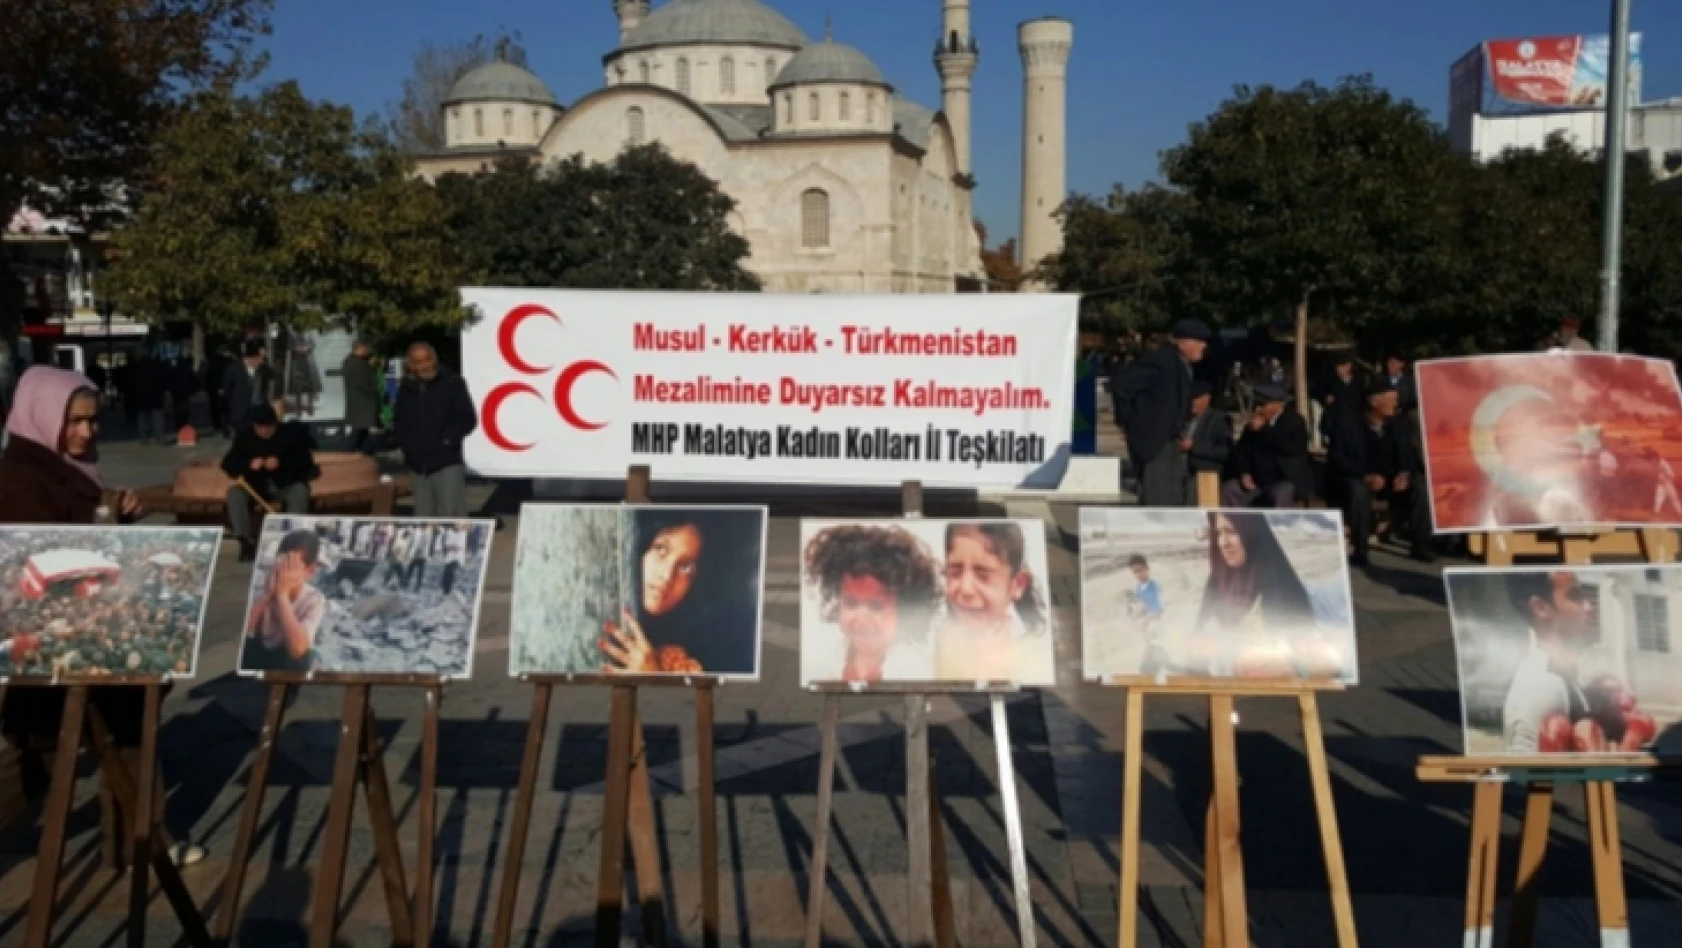 Foto Haber: MHP Kadın Kollarının Türkmen Mezalimi sergisi